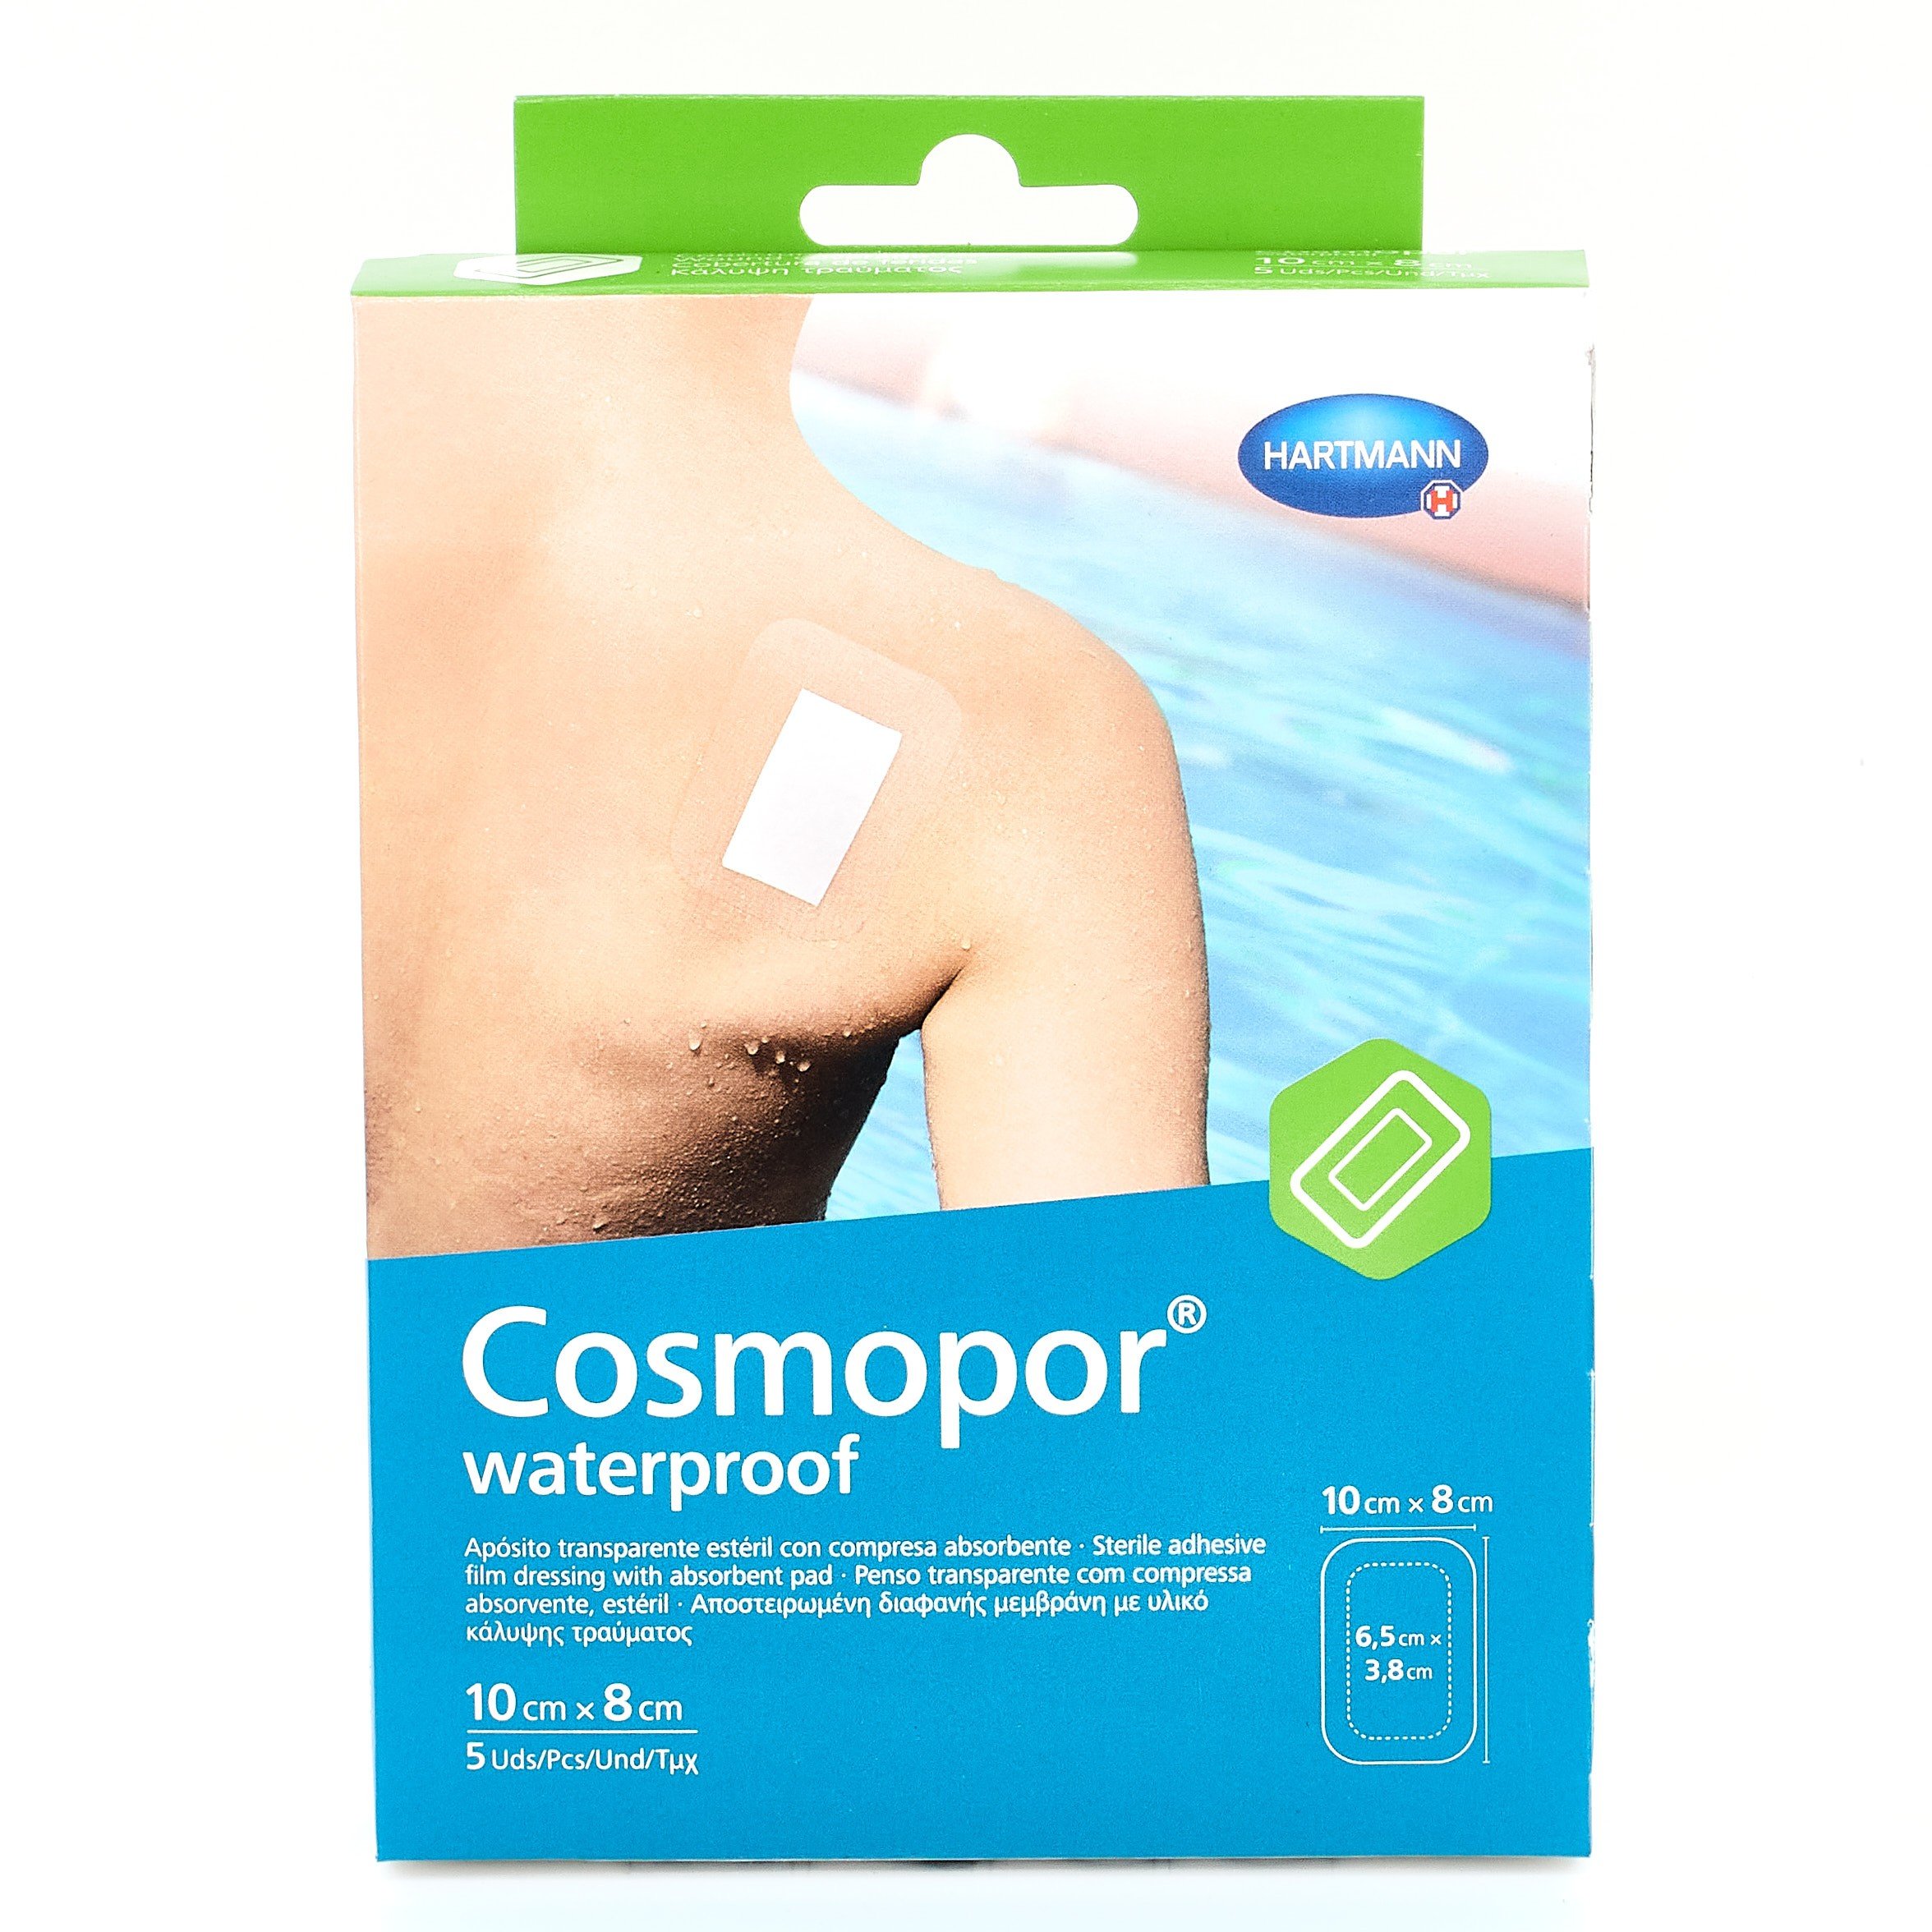 Cosmopor Waterproof, 10cm x 8cm 5 apósitos adhesivos